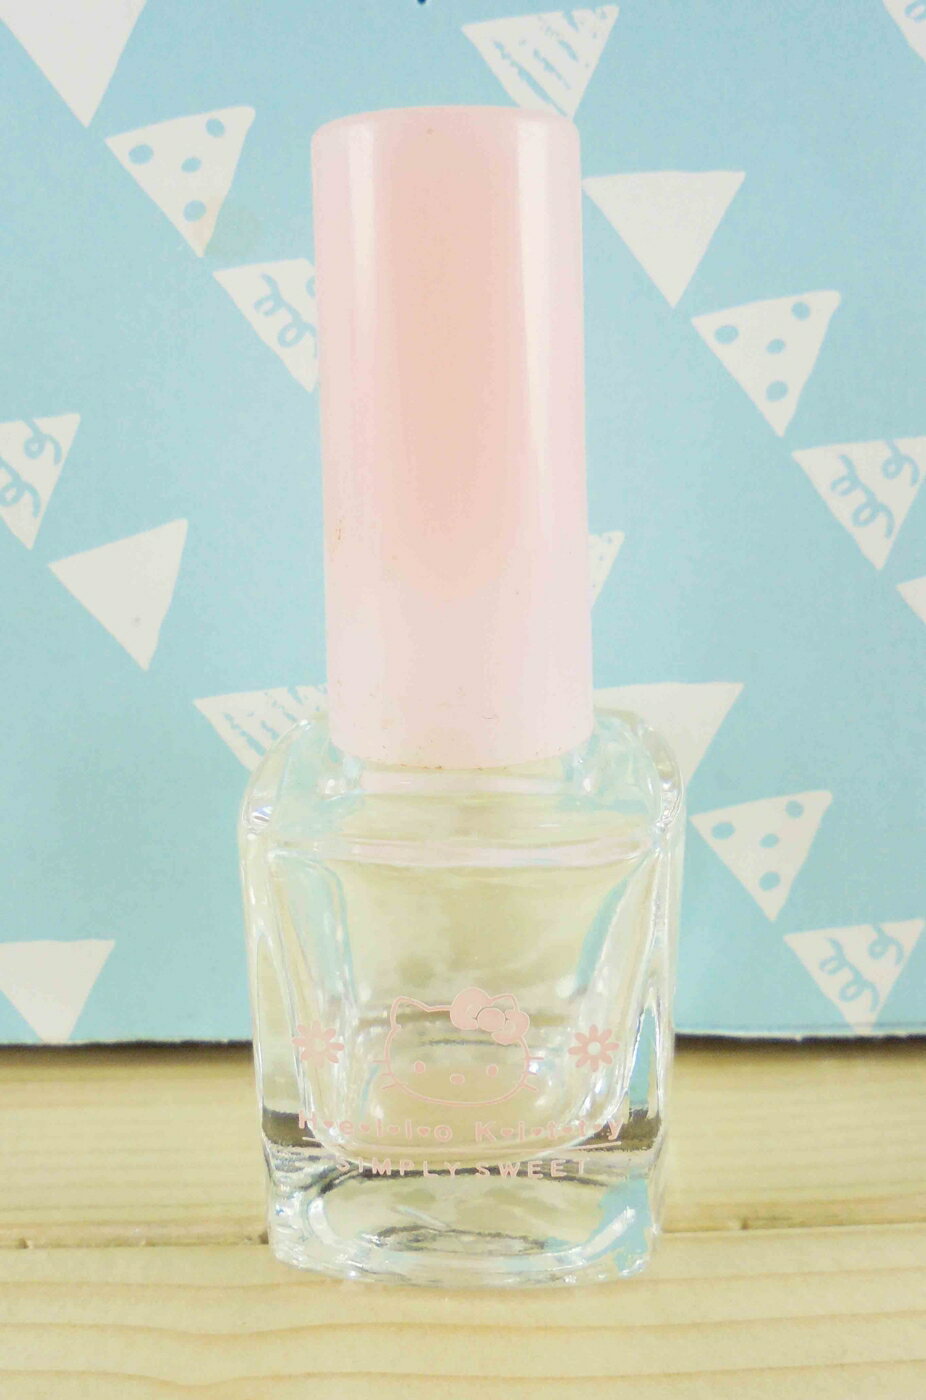 【震撼精品百貨】Hello Kitty 凱蒂貓 KITT造型玻璃瓶-方形造型-粉花 震撼日式精品百貨